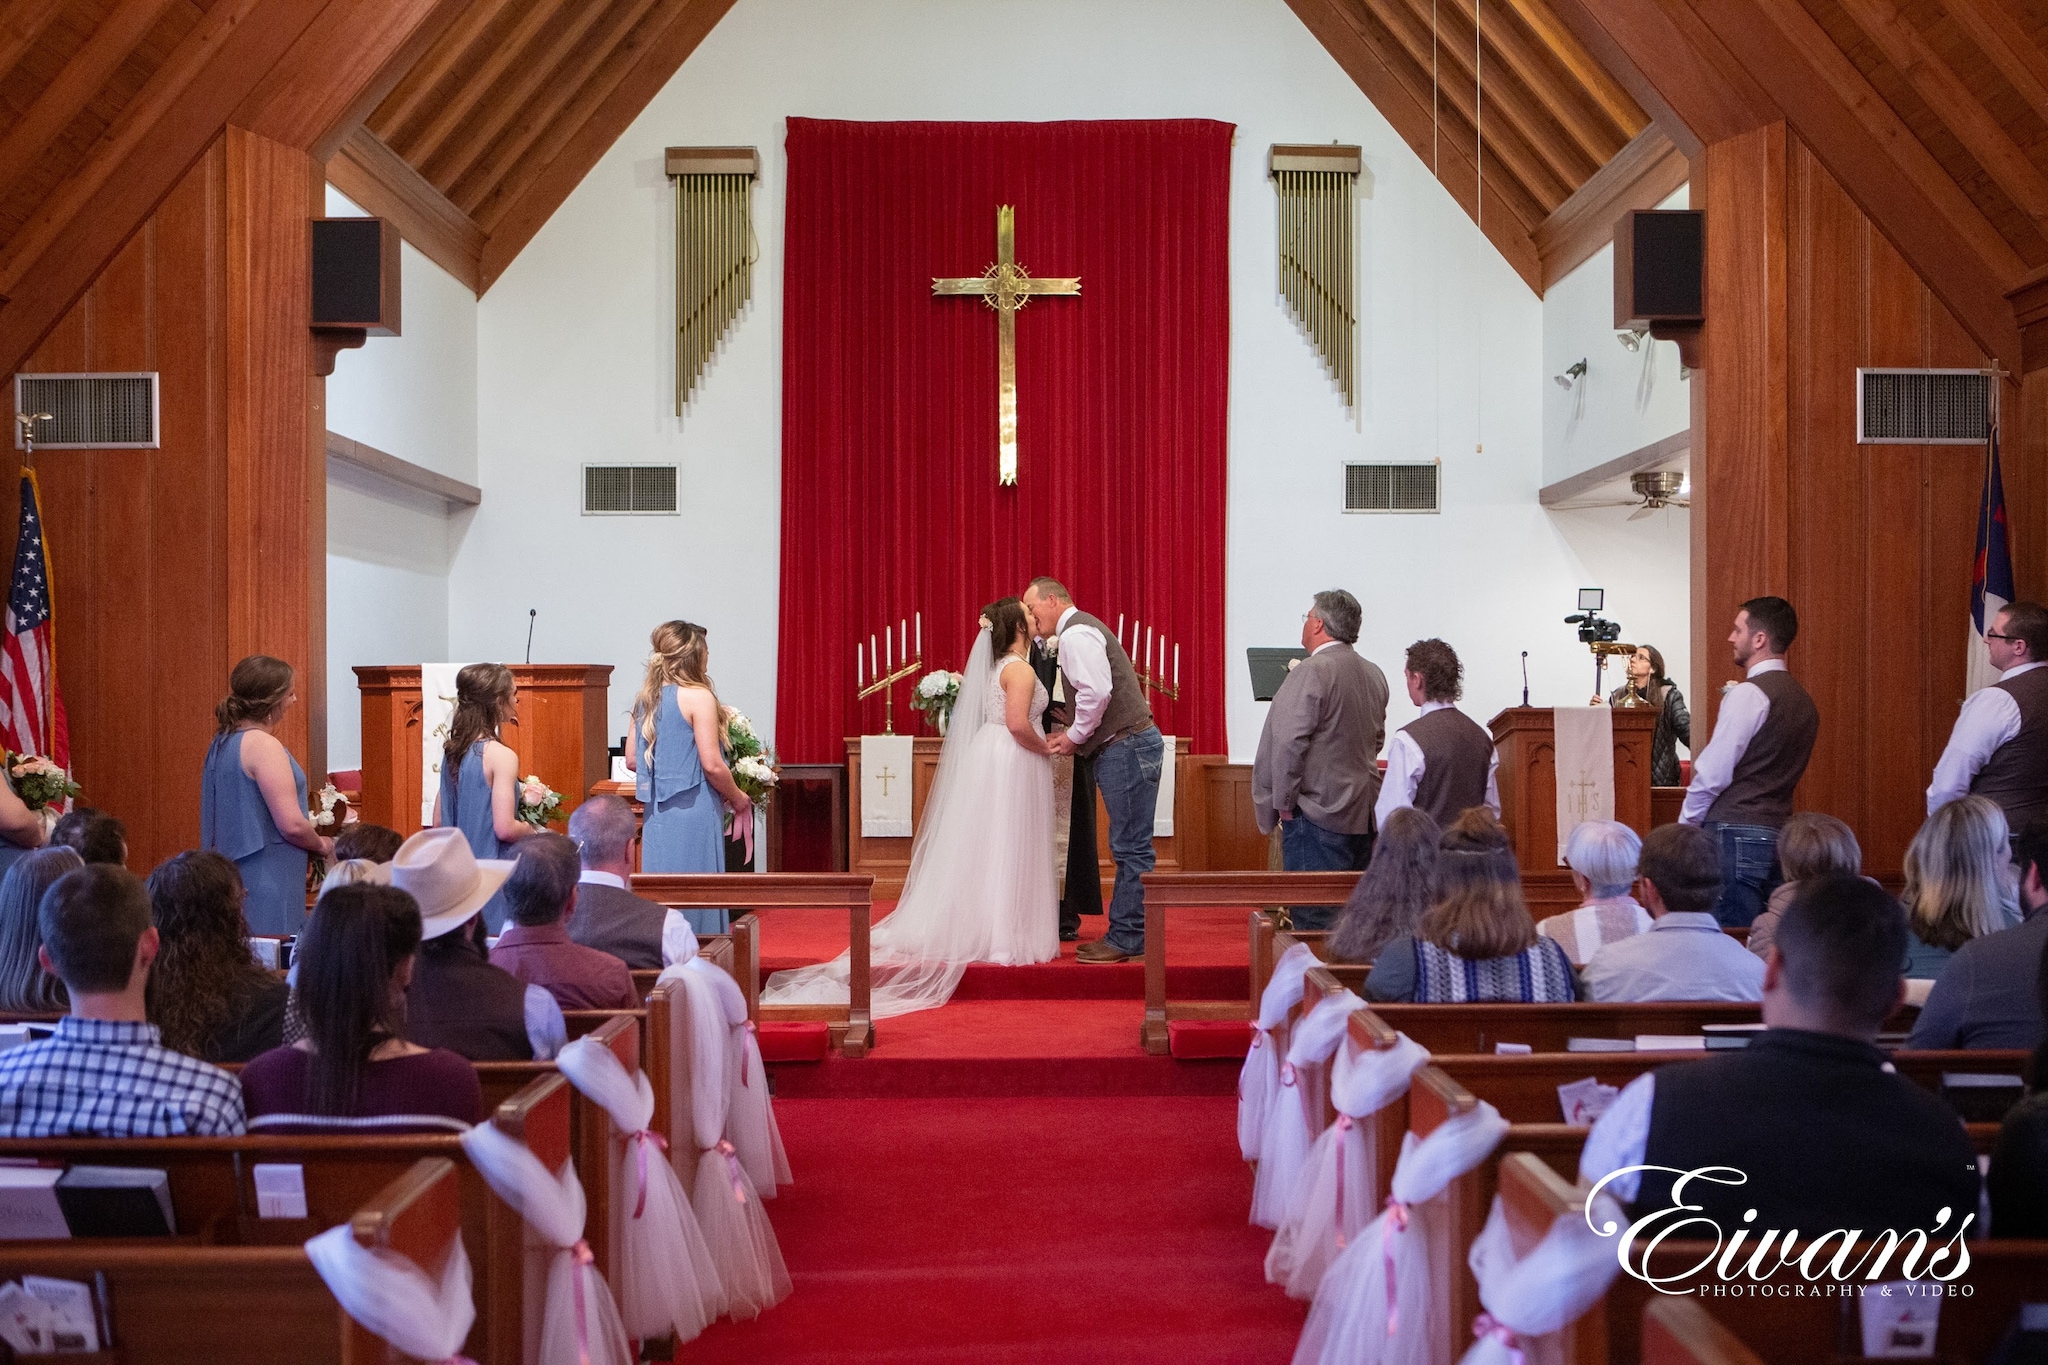 Ideas For Church Wedding Decorations